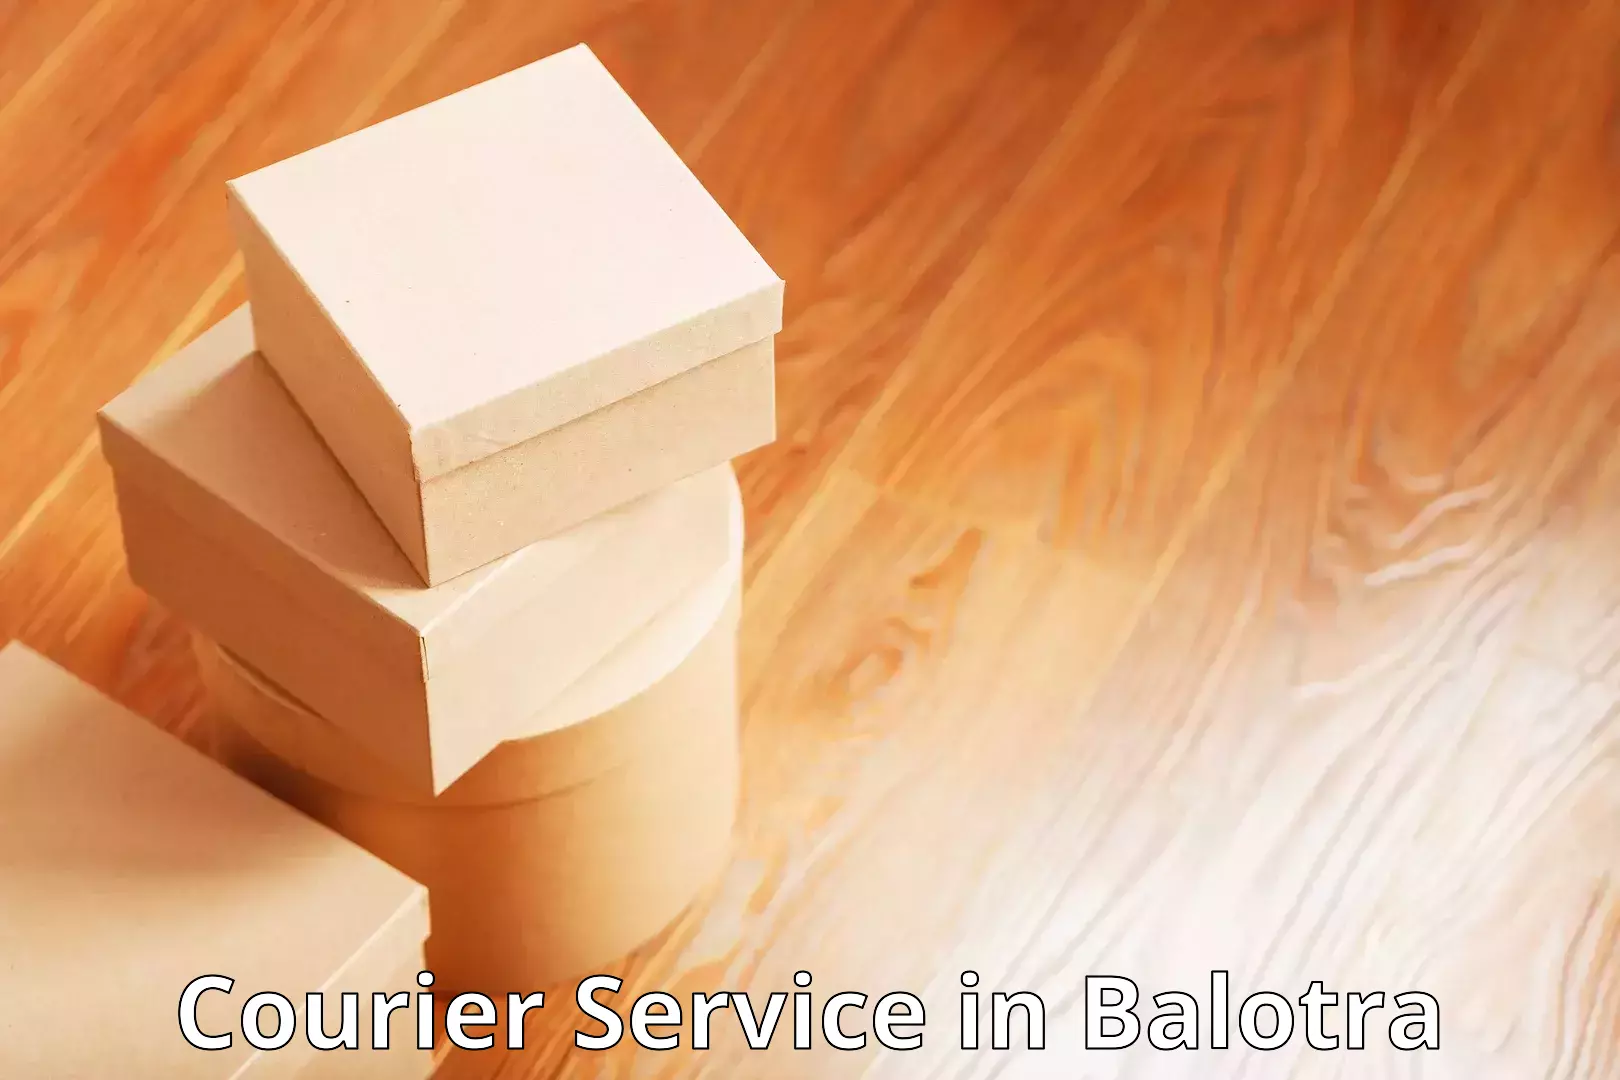 Courier service comparison in Balotra